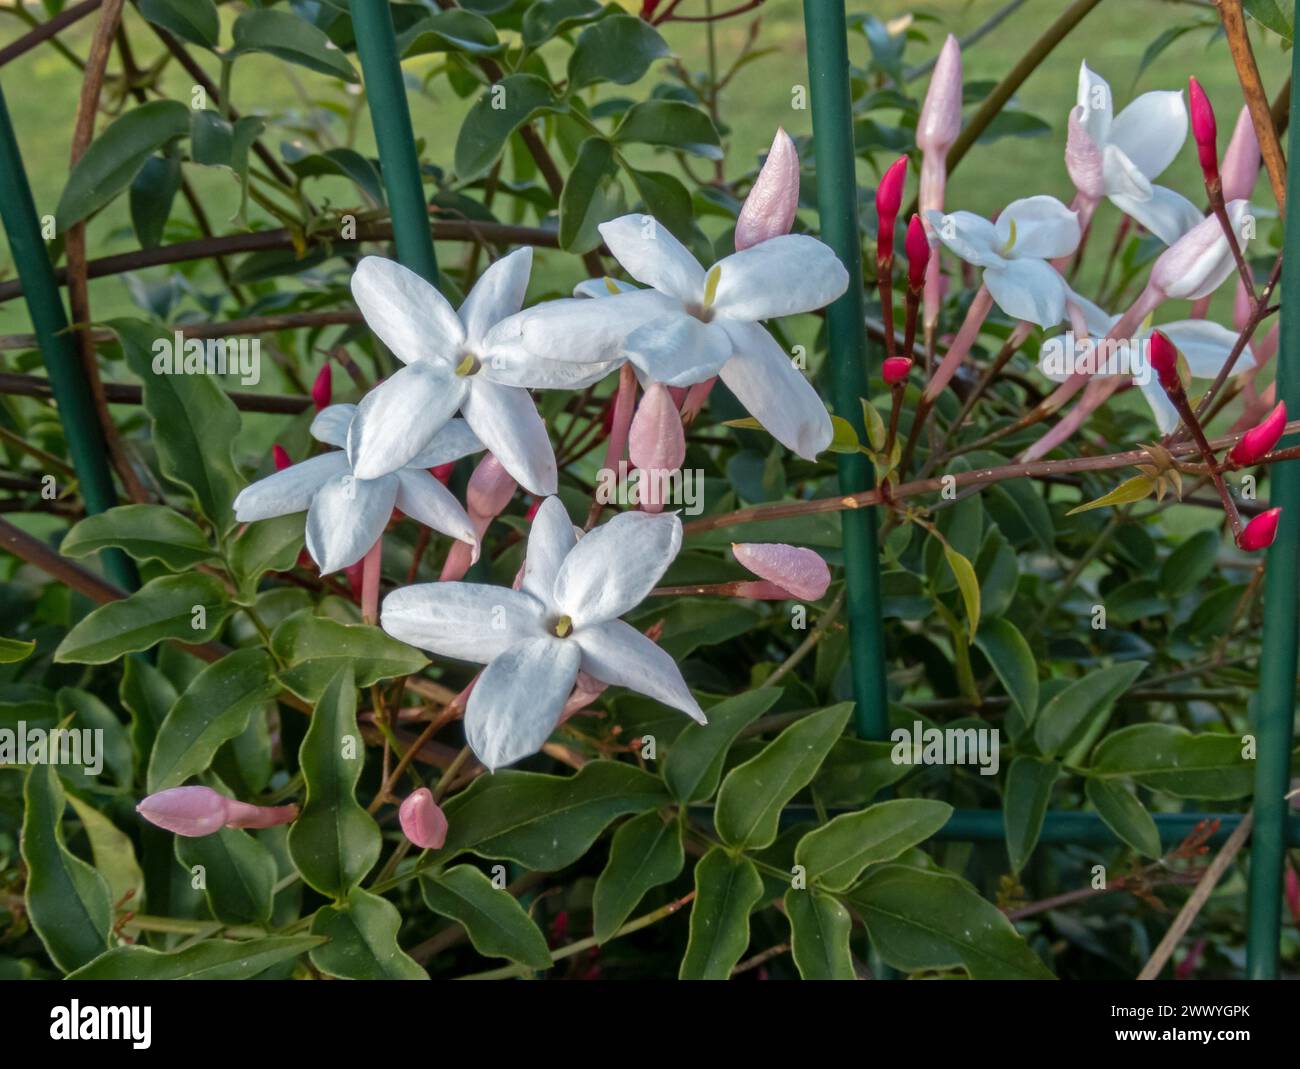 Jasminum polyanthum, vielblütiger Jasmin, rosa Jasmin oder weiße Jasminblüte. Schöne weiße Blumen und rosa Knospen auf dem Gartenzaun. Stockfoto